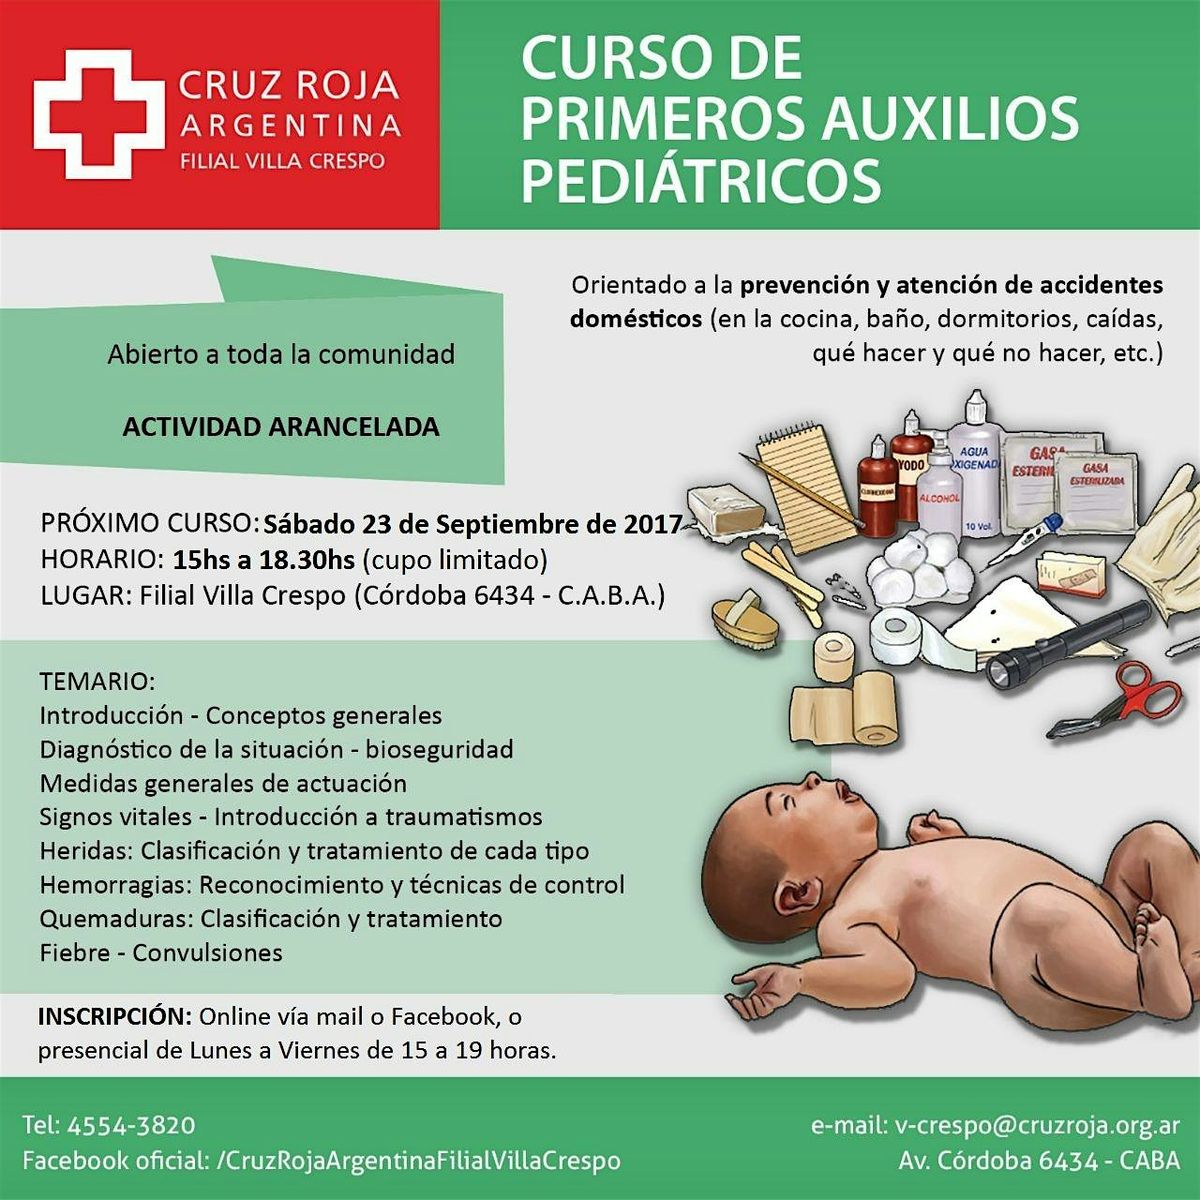 Curso de RCP en Cruz Roja (martes 07-05-24) 14 a 18 hs - Duraci\u00f3n 4 hs.